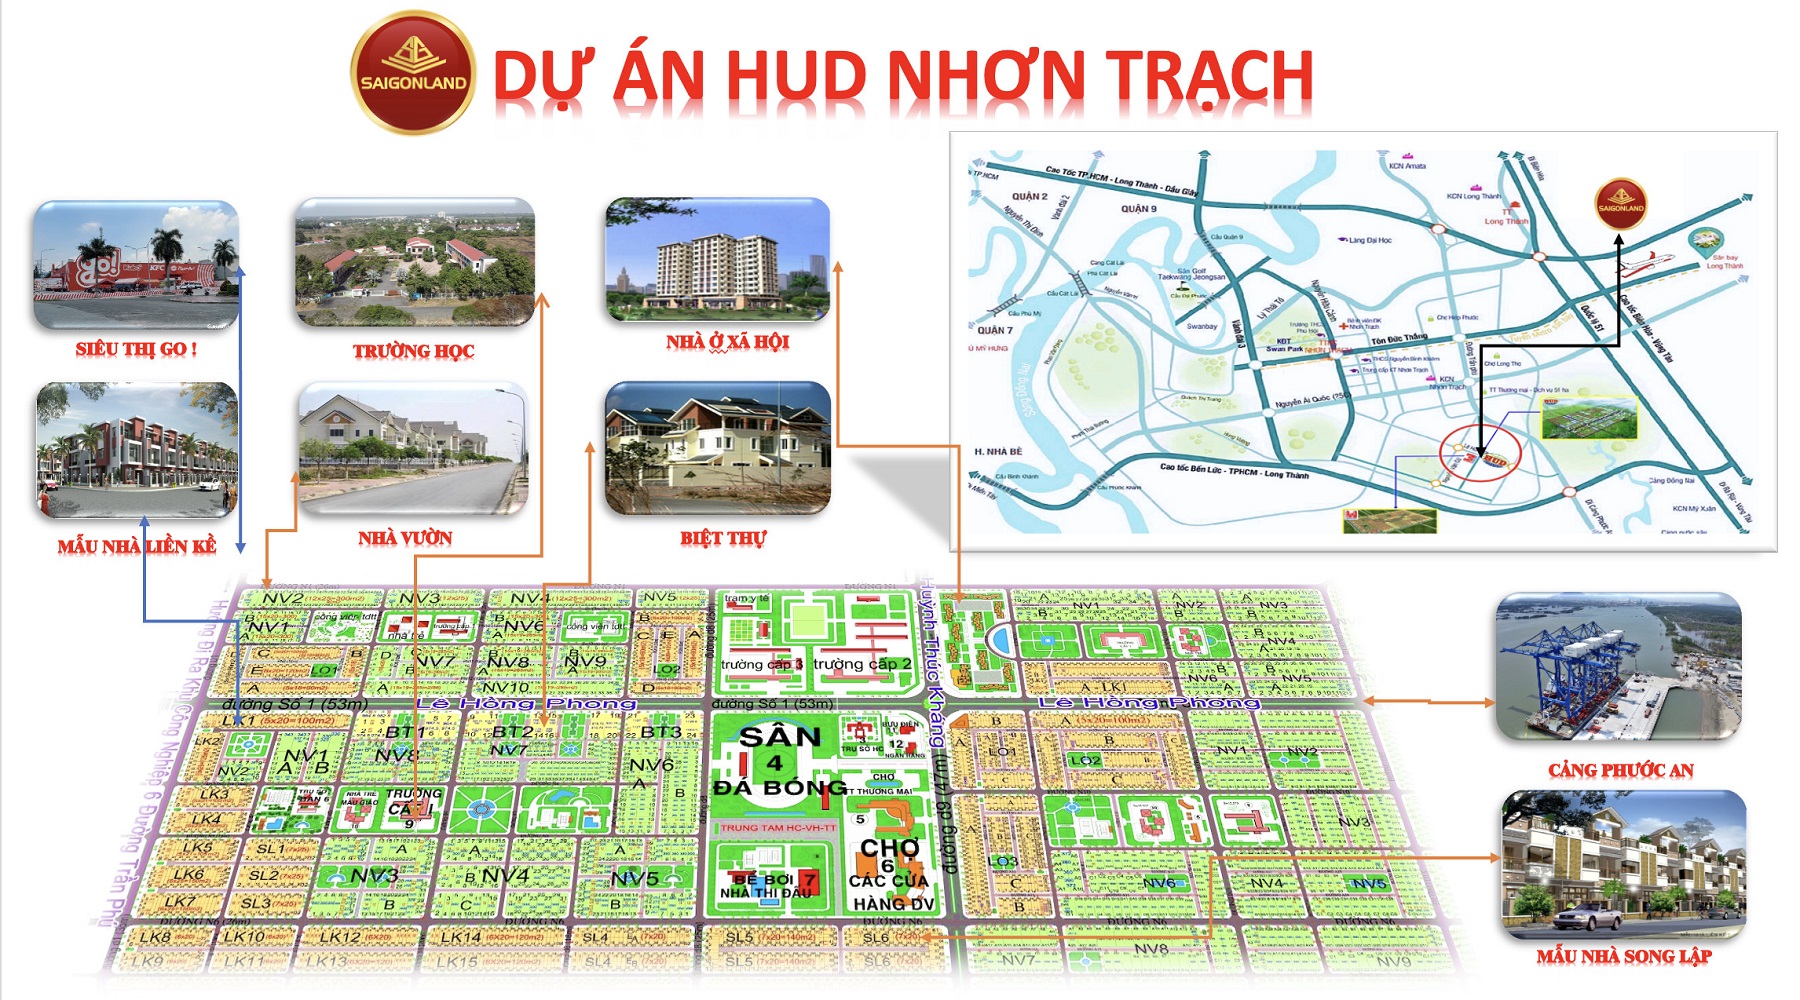 Cty Saigonland Nhơn Trạch - Mua bán đất Nhơn Trạch - Dự án Hud Nhơn Trạch Đồng Nai. - Ảnh 2